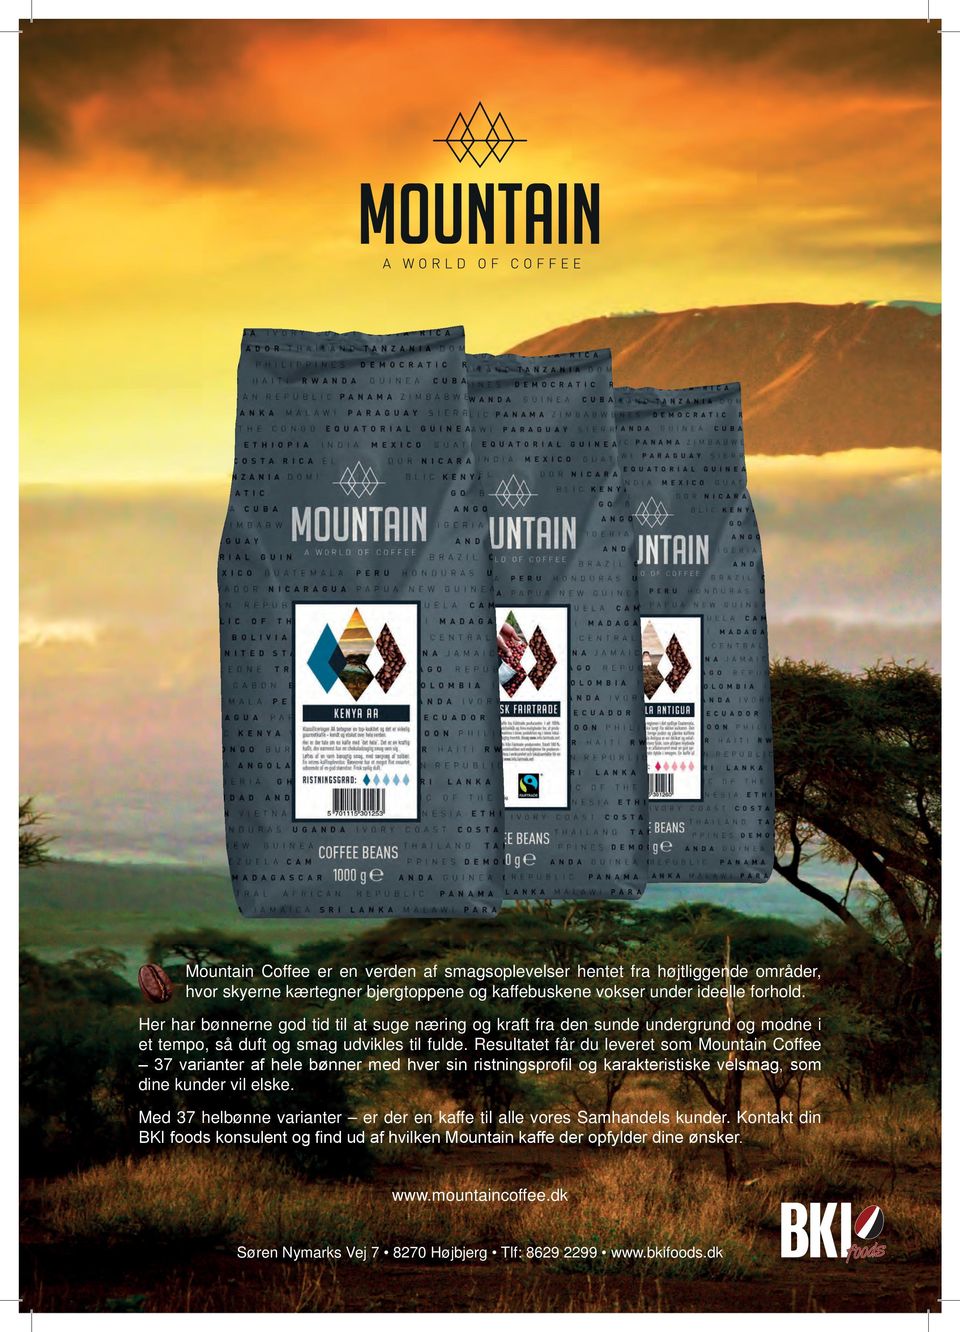 Resultatet får du leveret som Mountain Coffee 37 varianter af hele bønner med hver sin ristningsprofil og karakteristiske velsmag, som dine kunder vil elske.